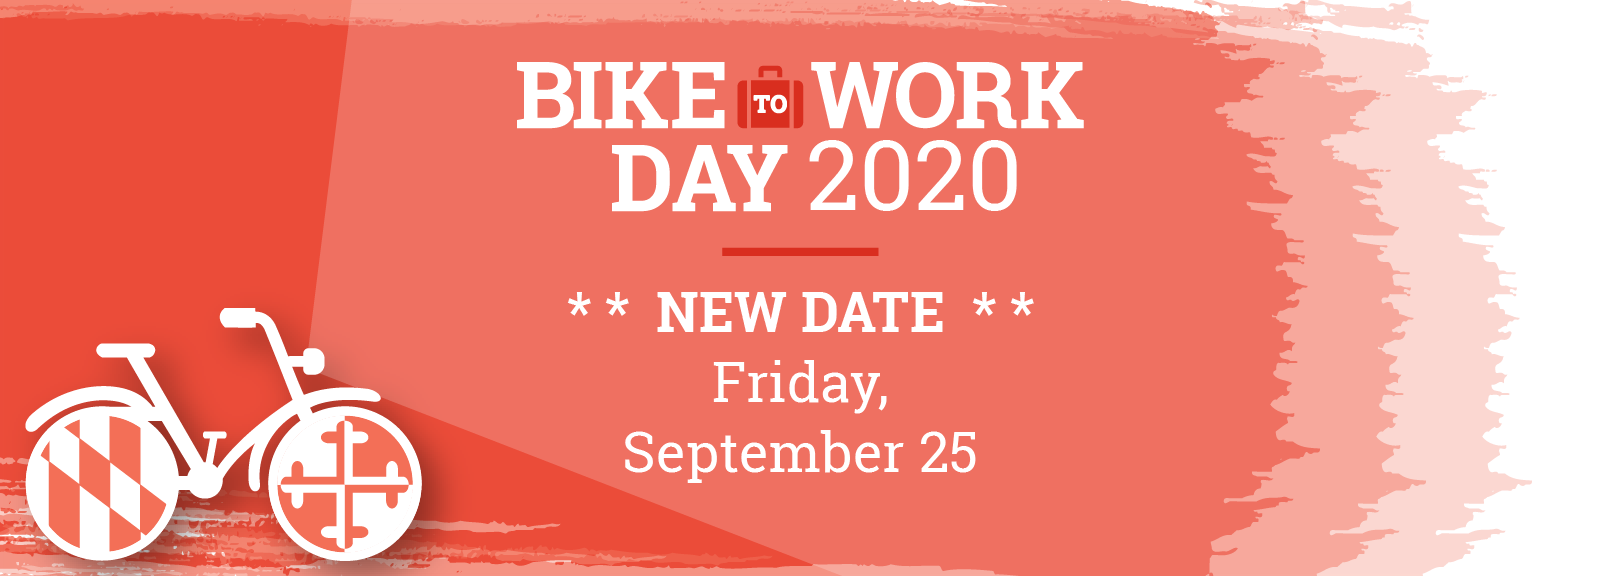 bike to work day 2020 rescheduled